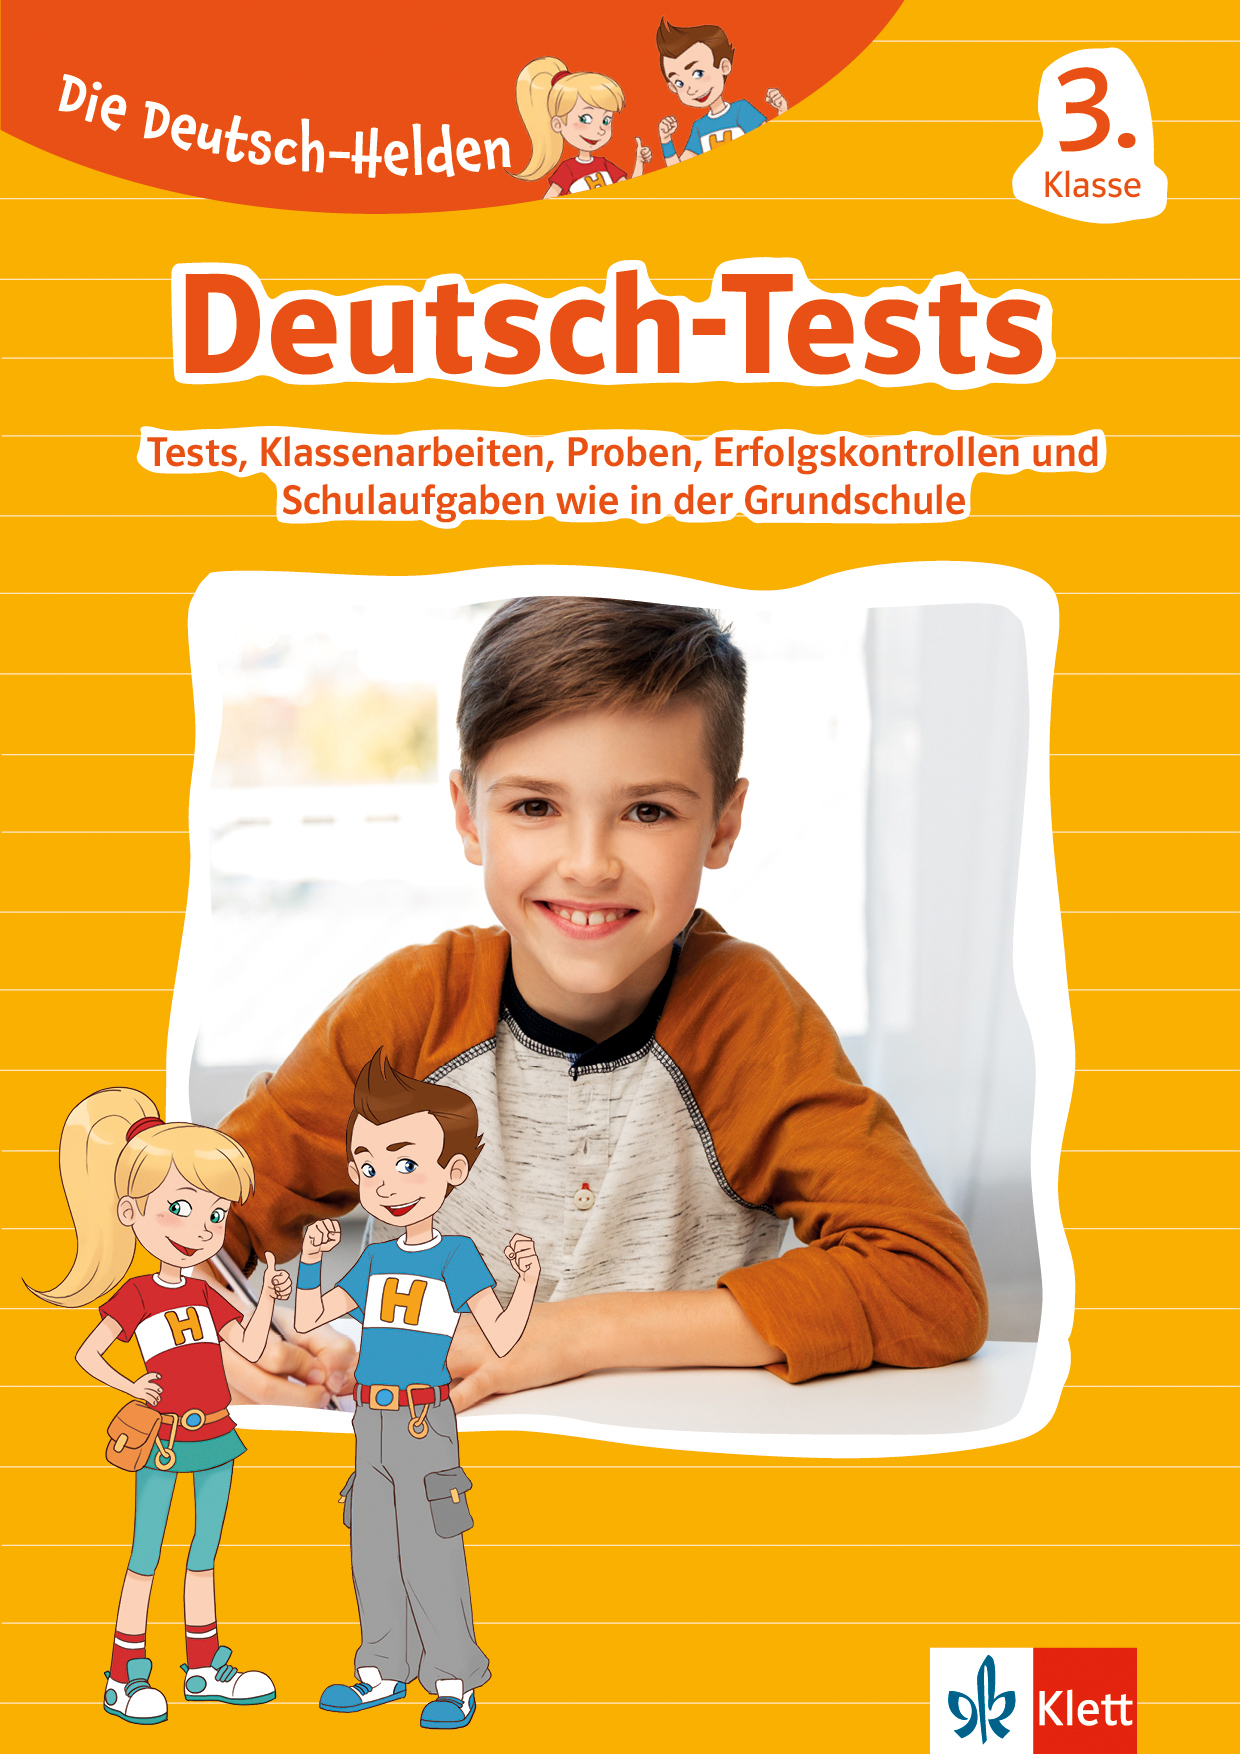 Klett Deutsch-Tests 3. Klasse